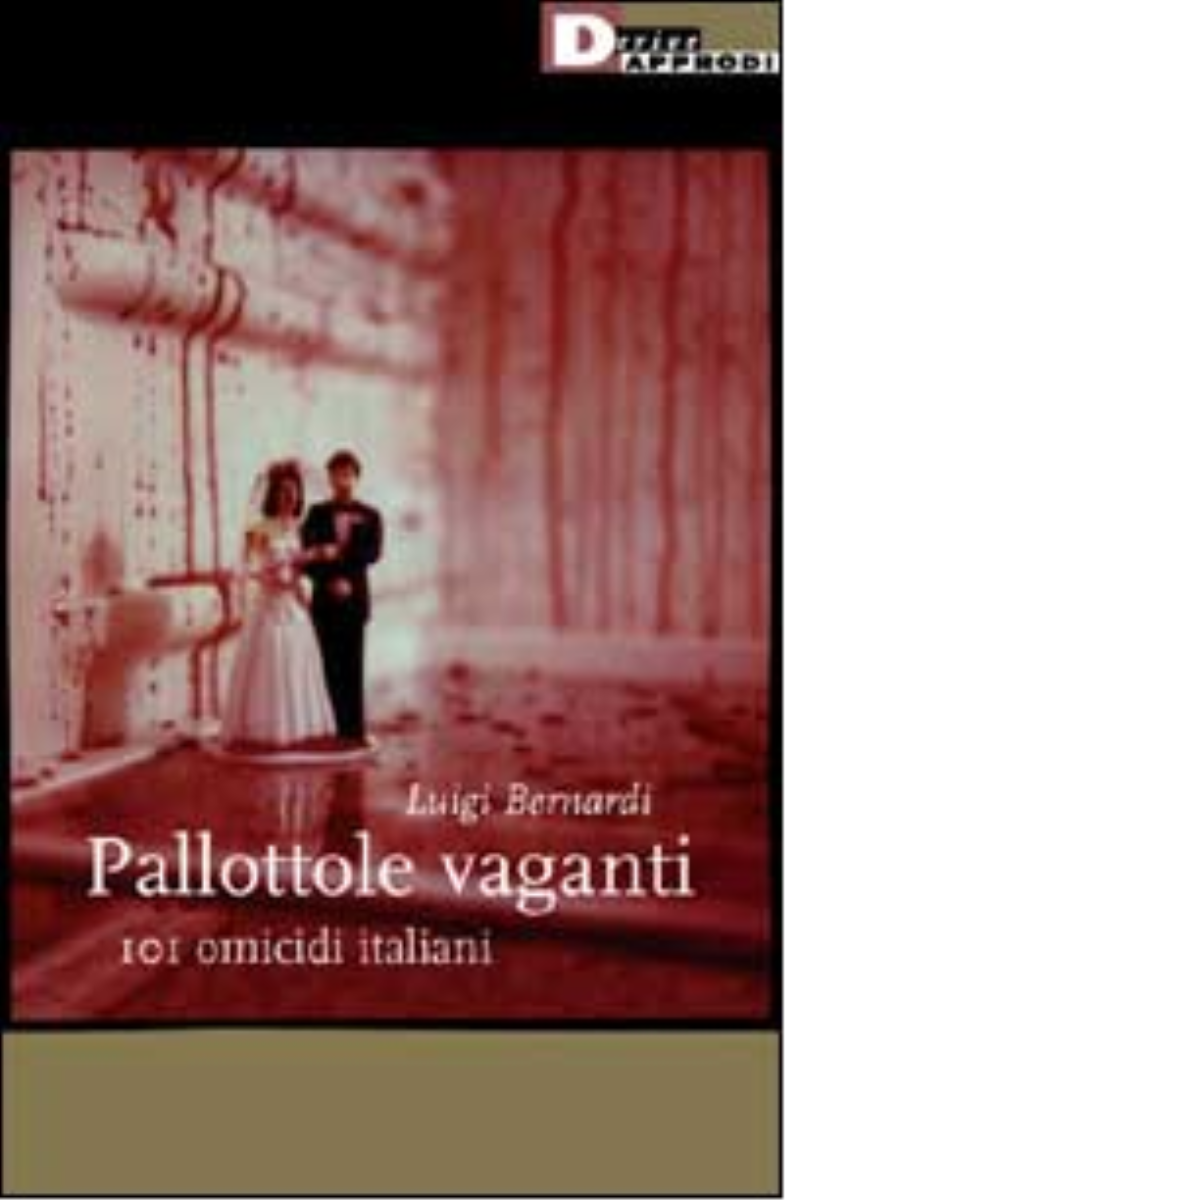 PALLOTTOLE VAGANTI. di LUIGI BERNARDI - DeriveApprodi editore, 2003